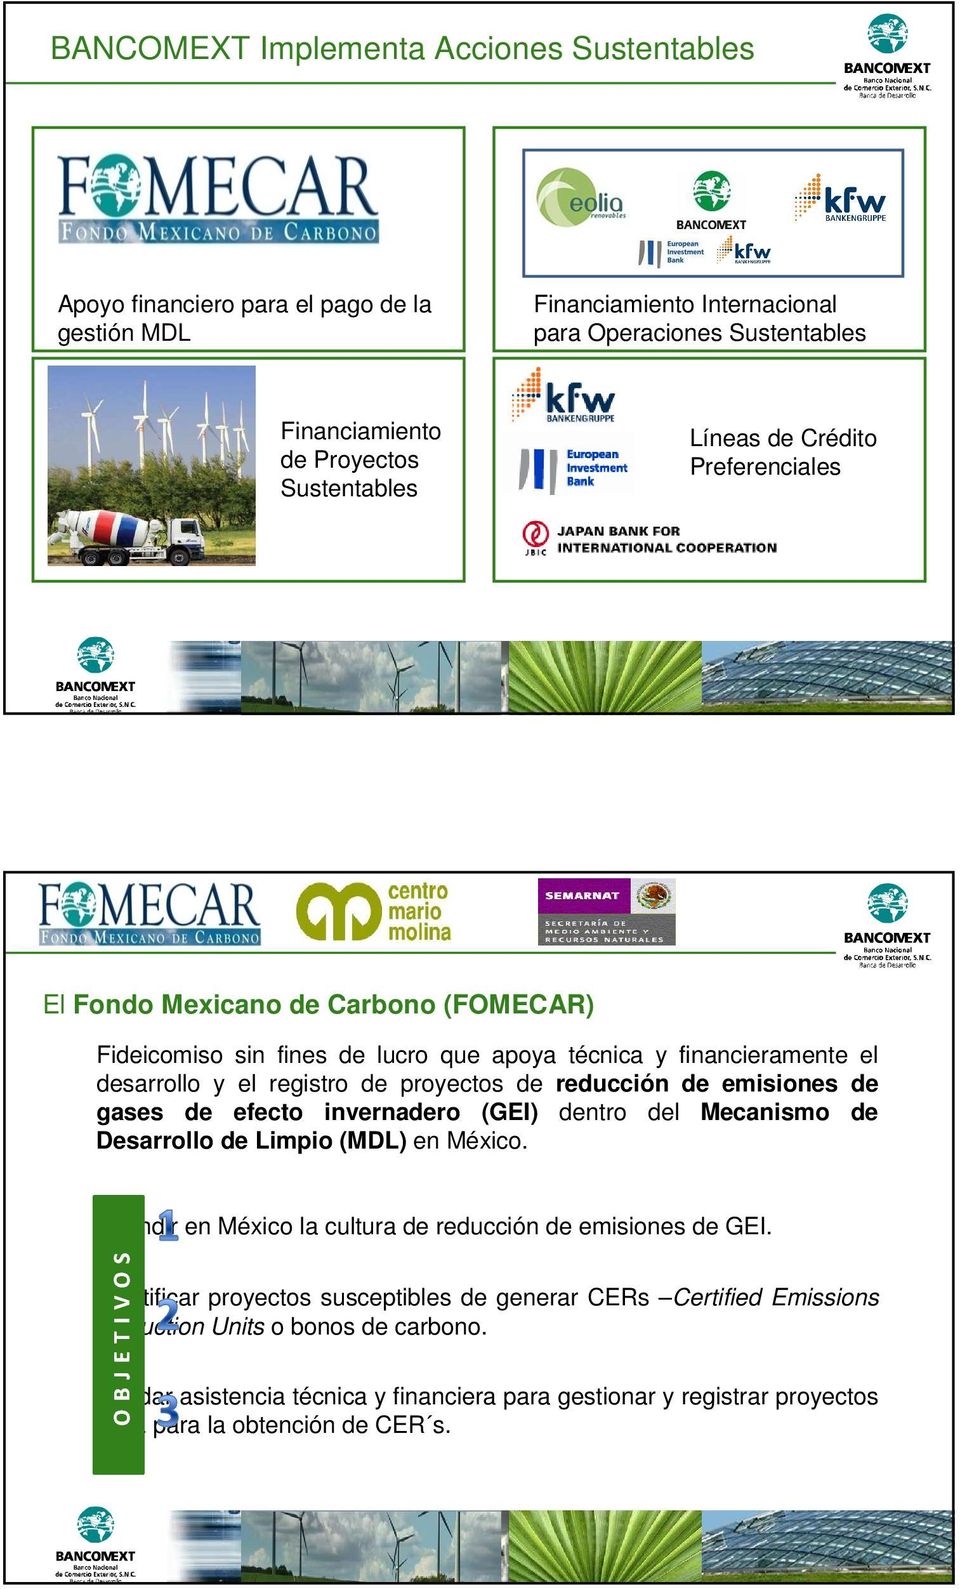 de emisiones de gases de efecto invernadero (GEI) dentro del Mecanismo de Desarrollo de Limpio (MDL) en México. Difundir en México la cultura de reducción de emisiones de GEI.